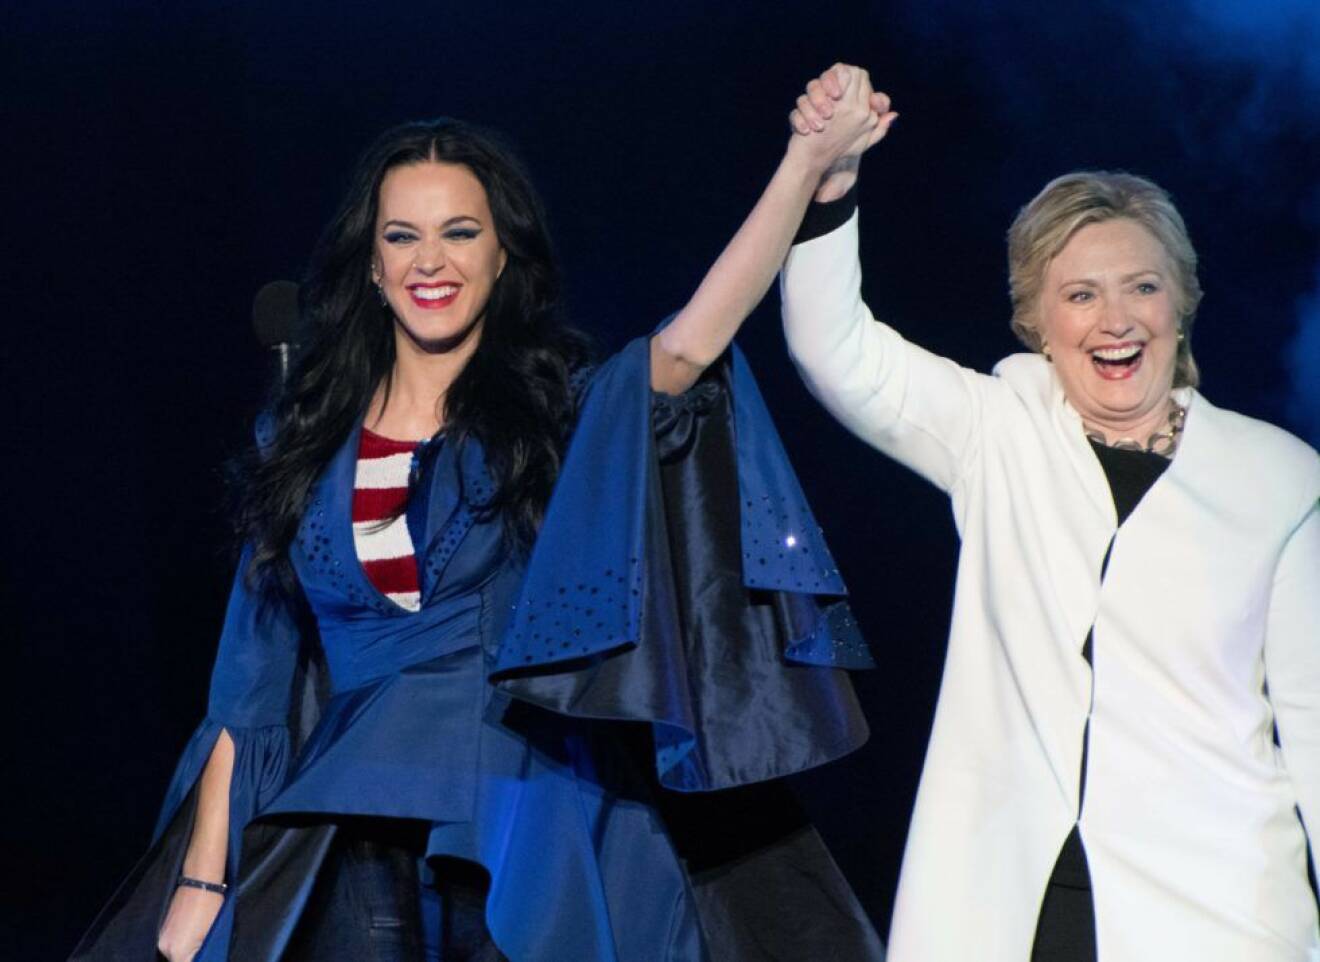 I helgen uppträdde Katy Perry i Pennsylvania för att supporta Hillary Clinton.